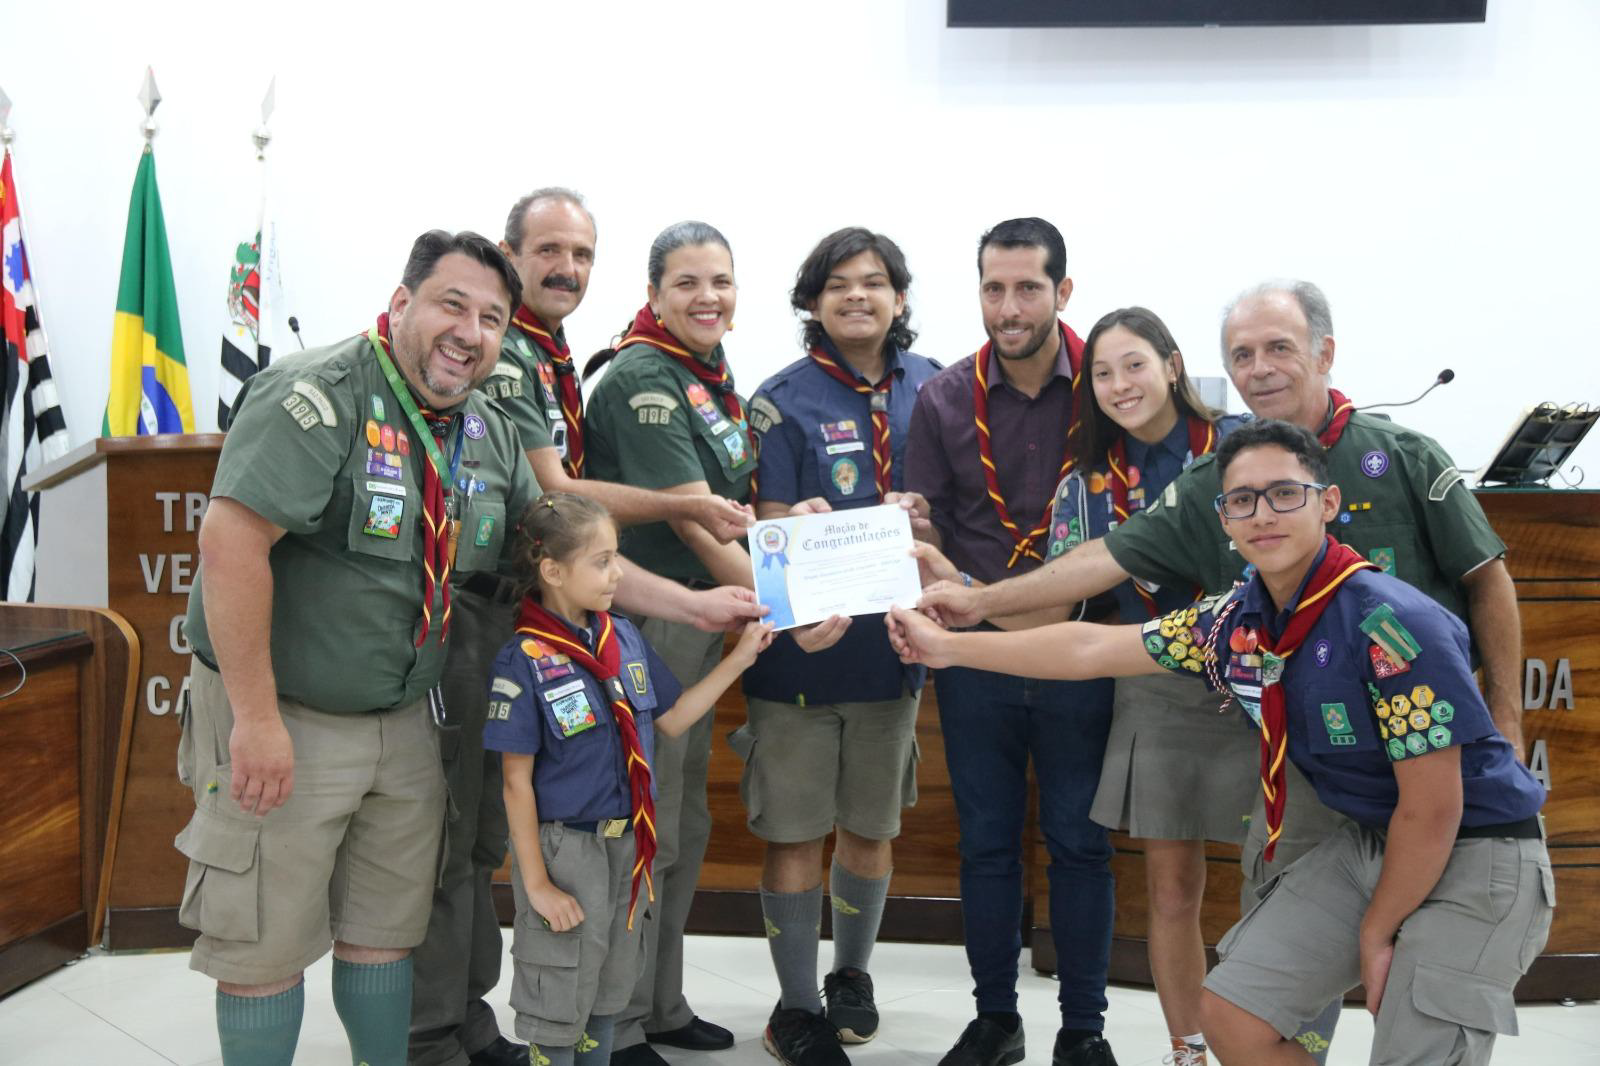 Grupo Escoteiro Grifo Caçador recebe homenagem na Câmara de Vereadores em Atibaia